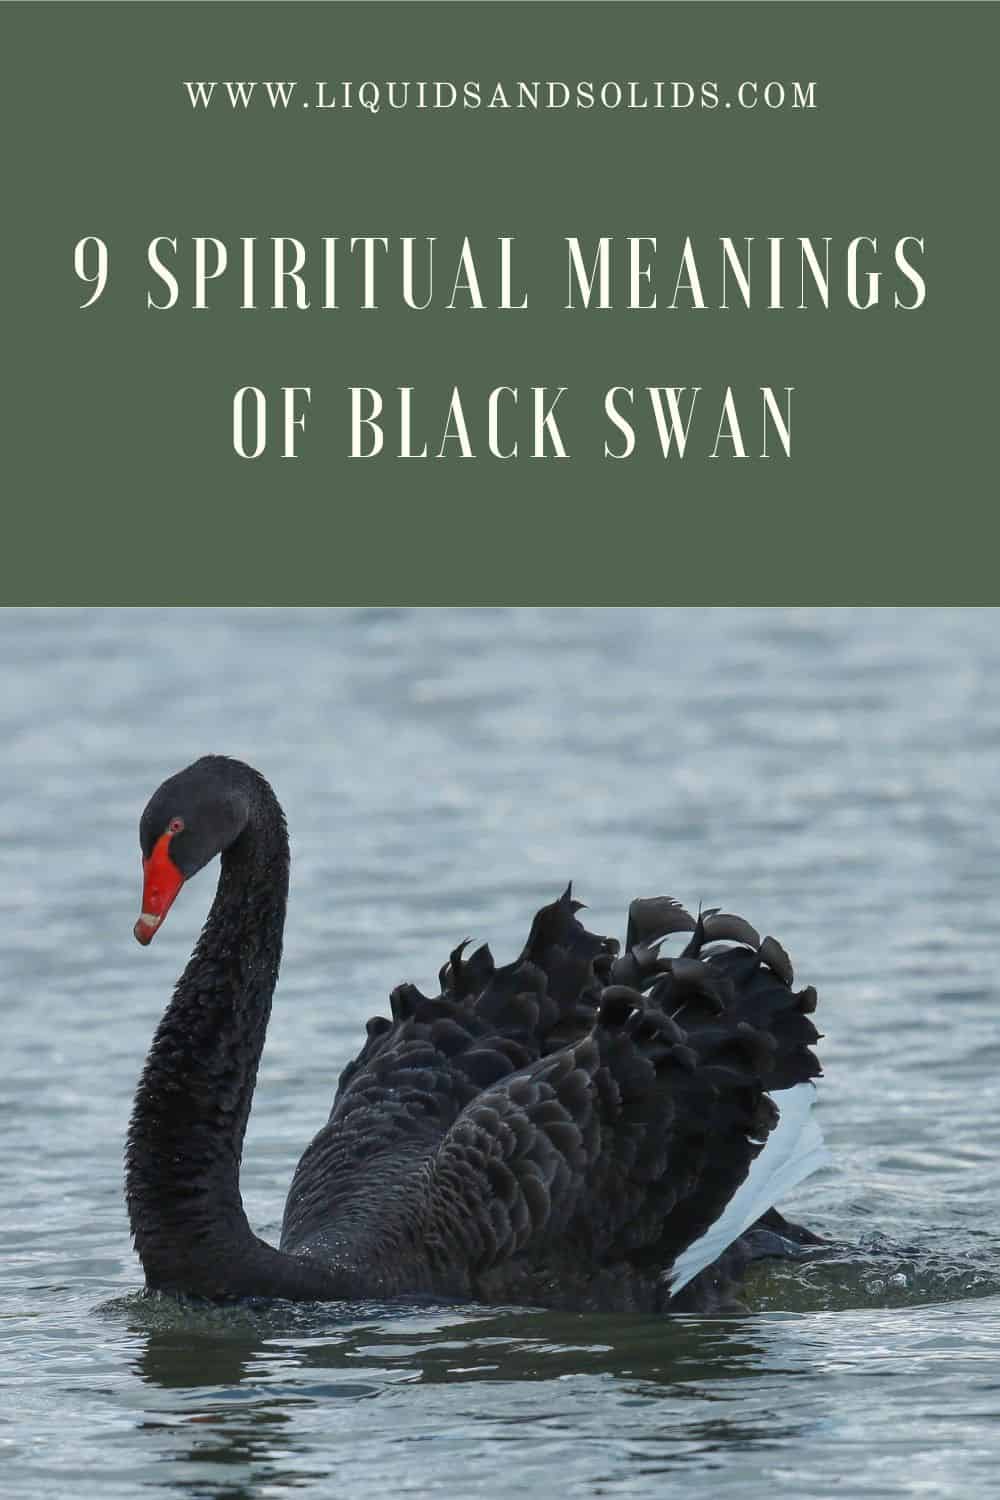  შავი გედის 9 სულიერი მნიშვნელობა